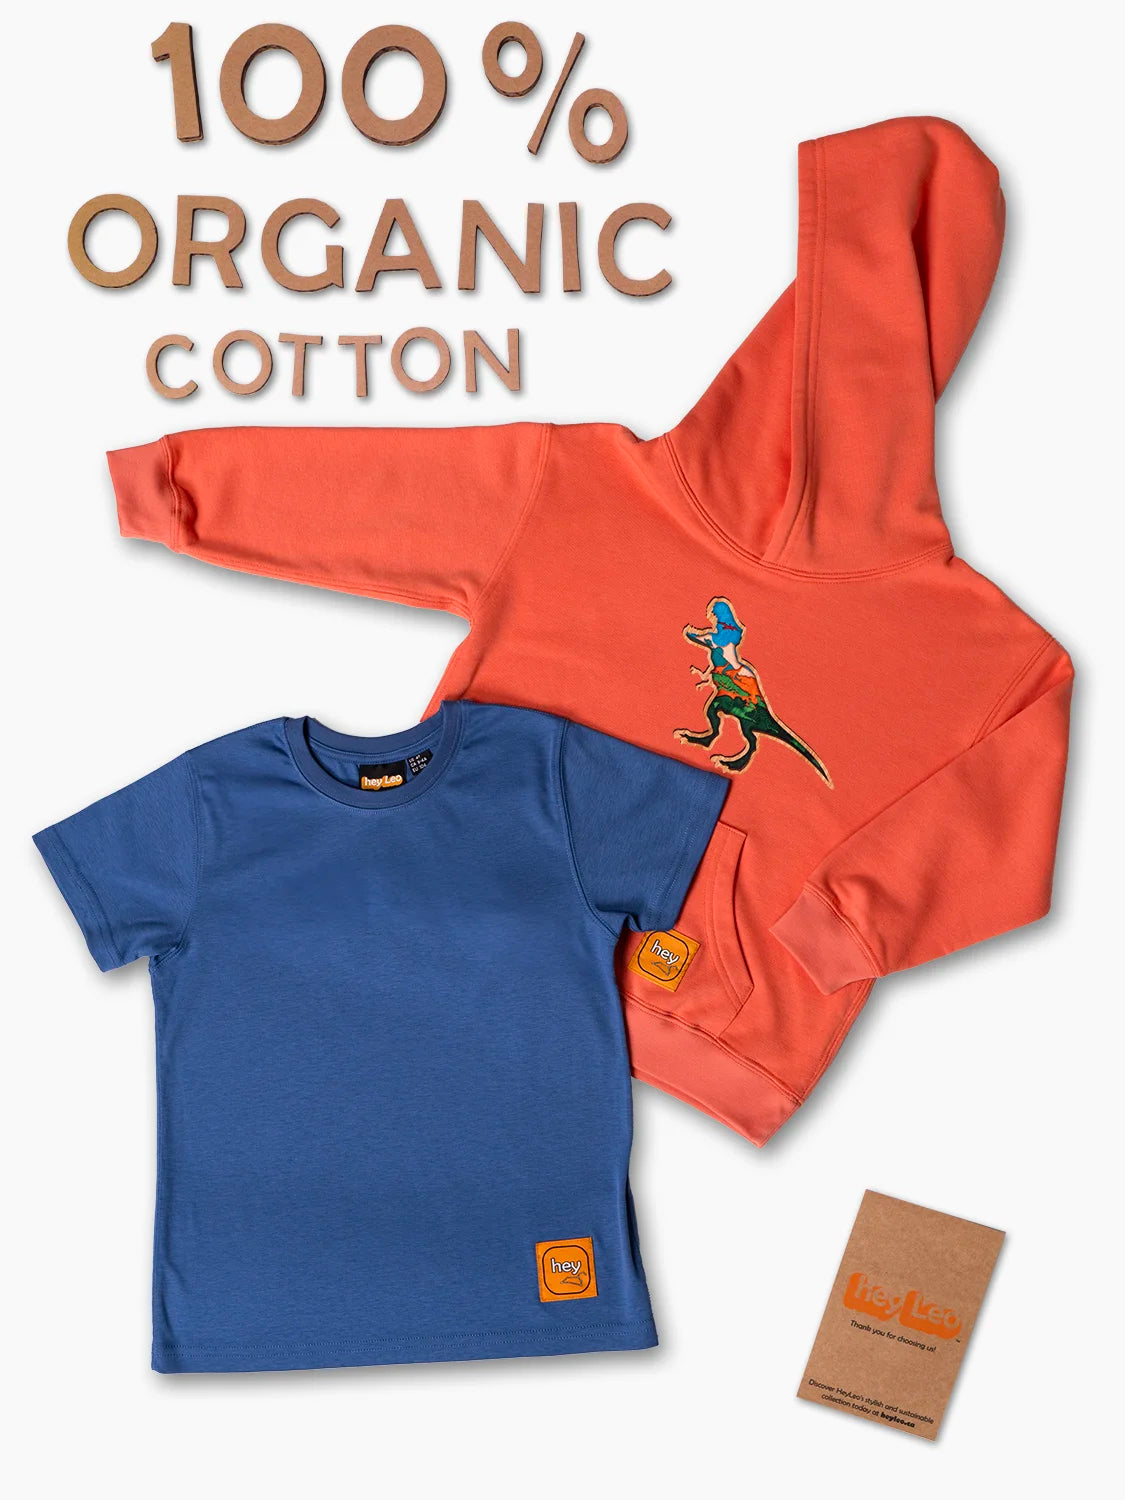 100% Organic Cotton 2-piece Premium Outfit T-Rex Set